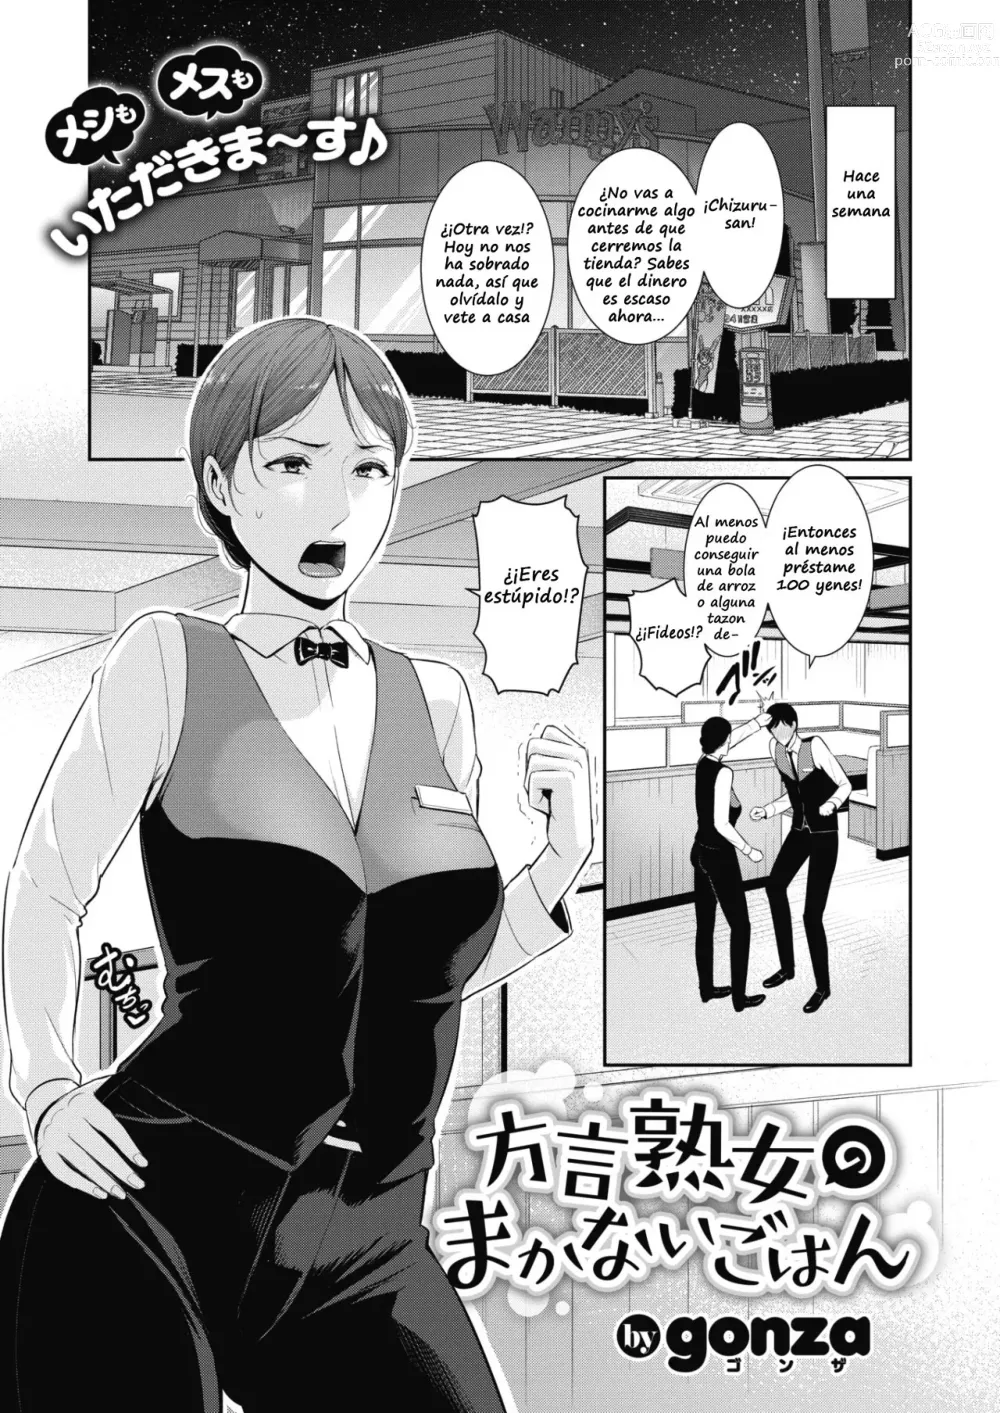 Page 1 of manga Hougen Jukujo no Makanai Gohan